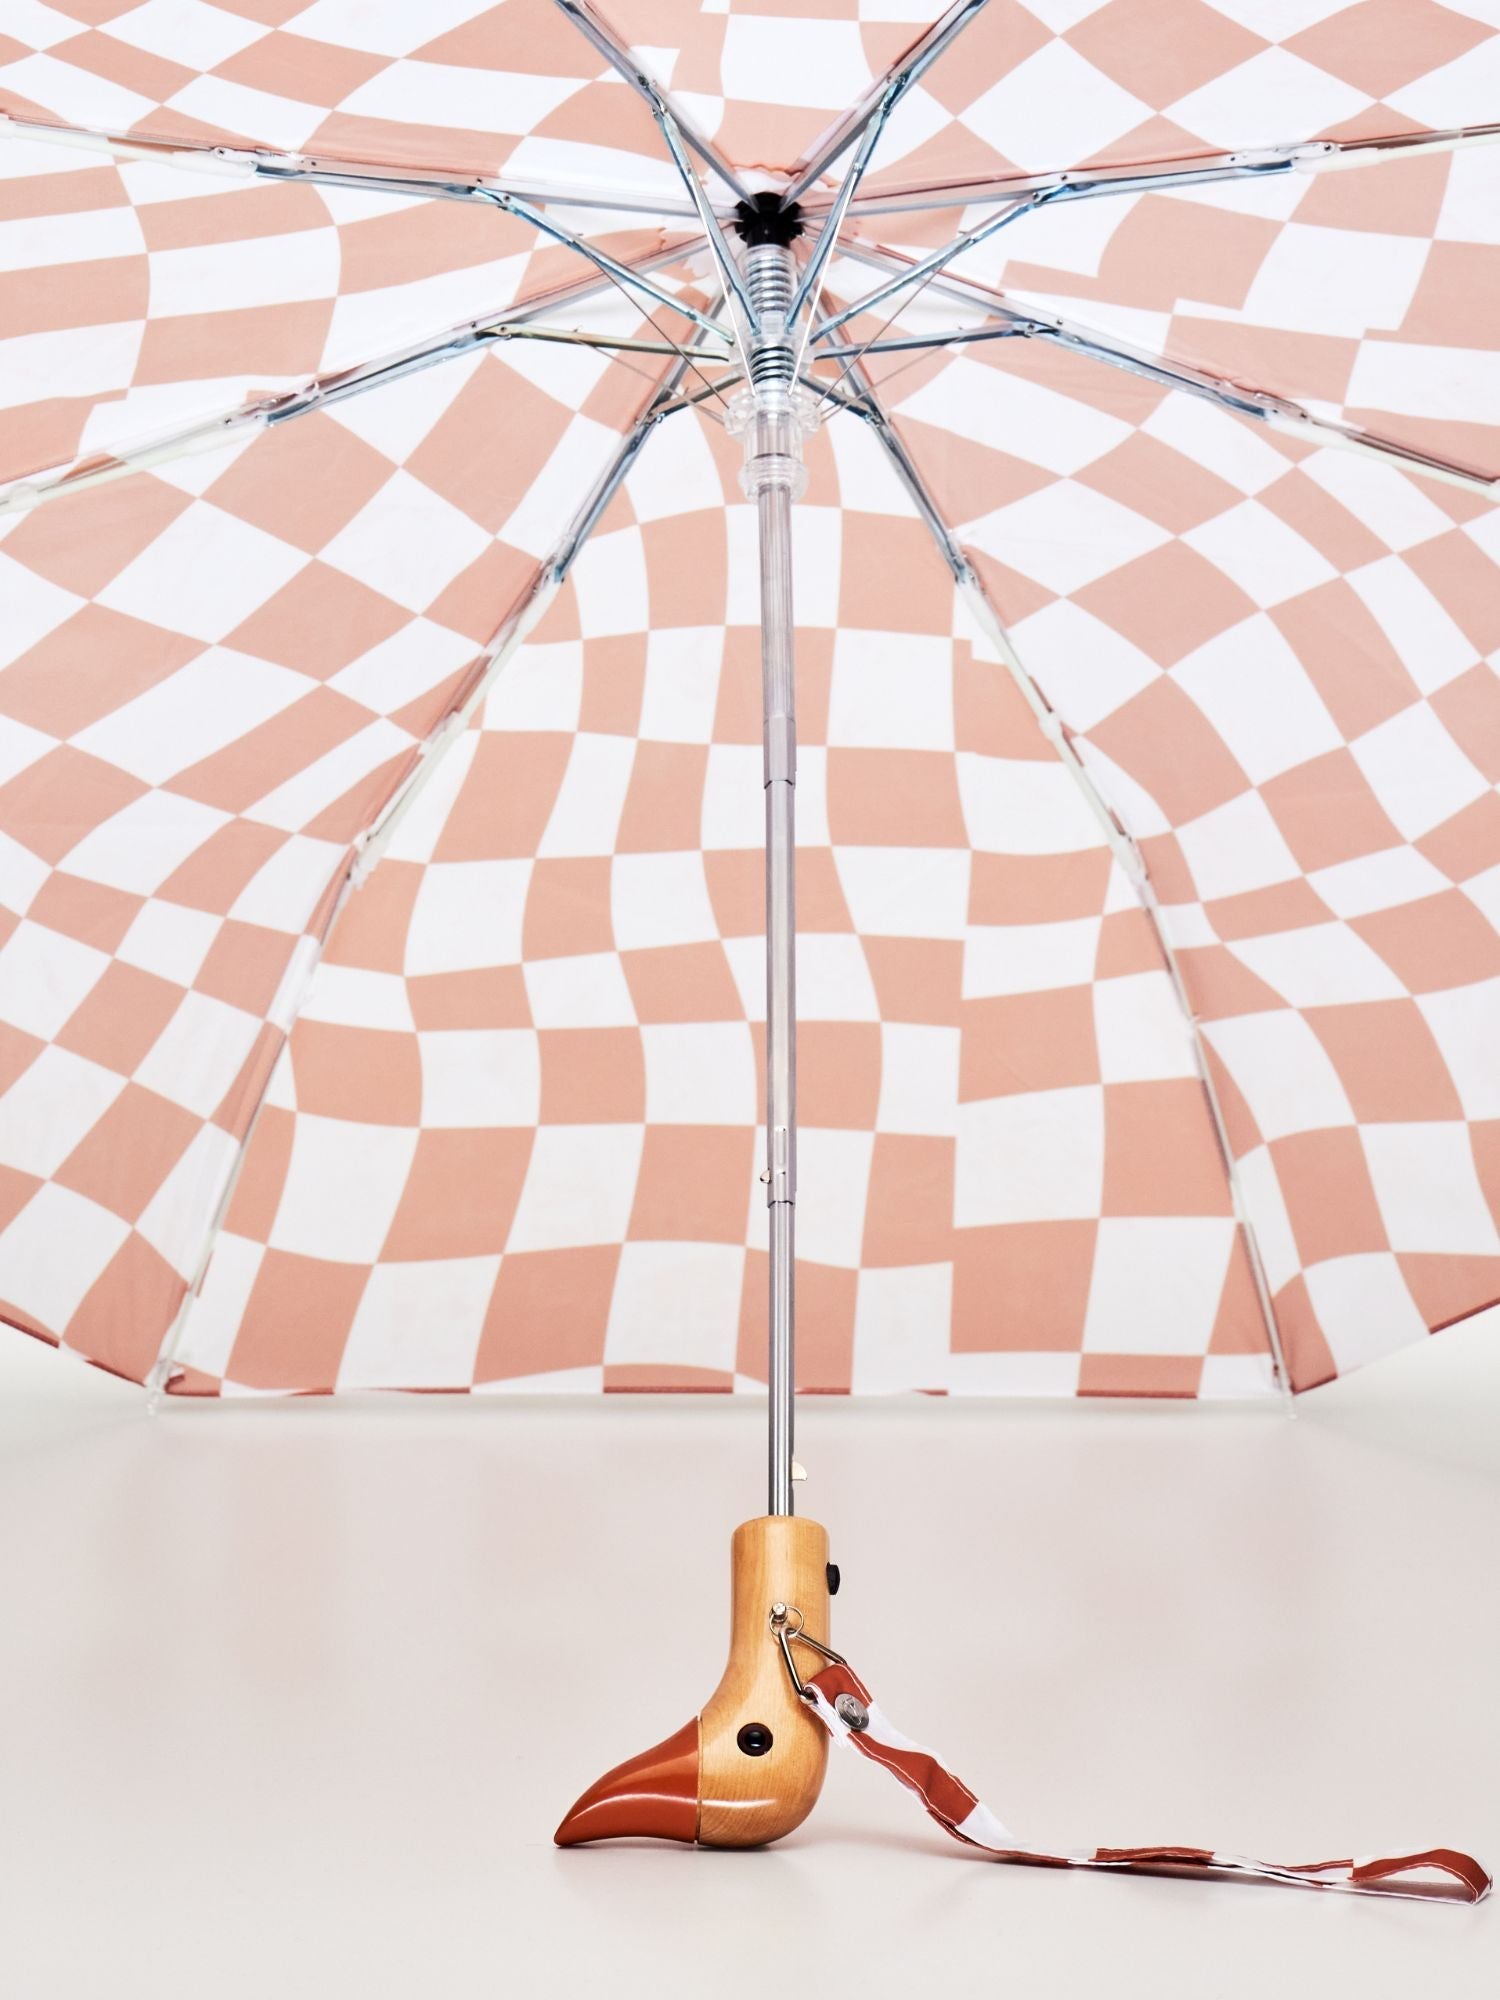 NEW! Peanut Butter Checkers Eco-Friendly Umbrella